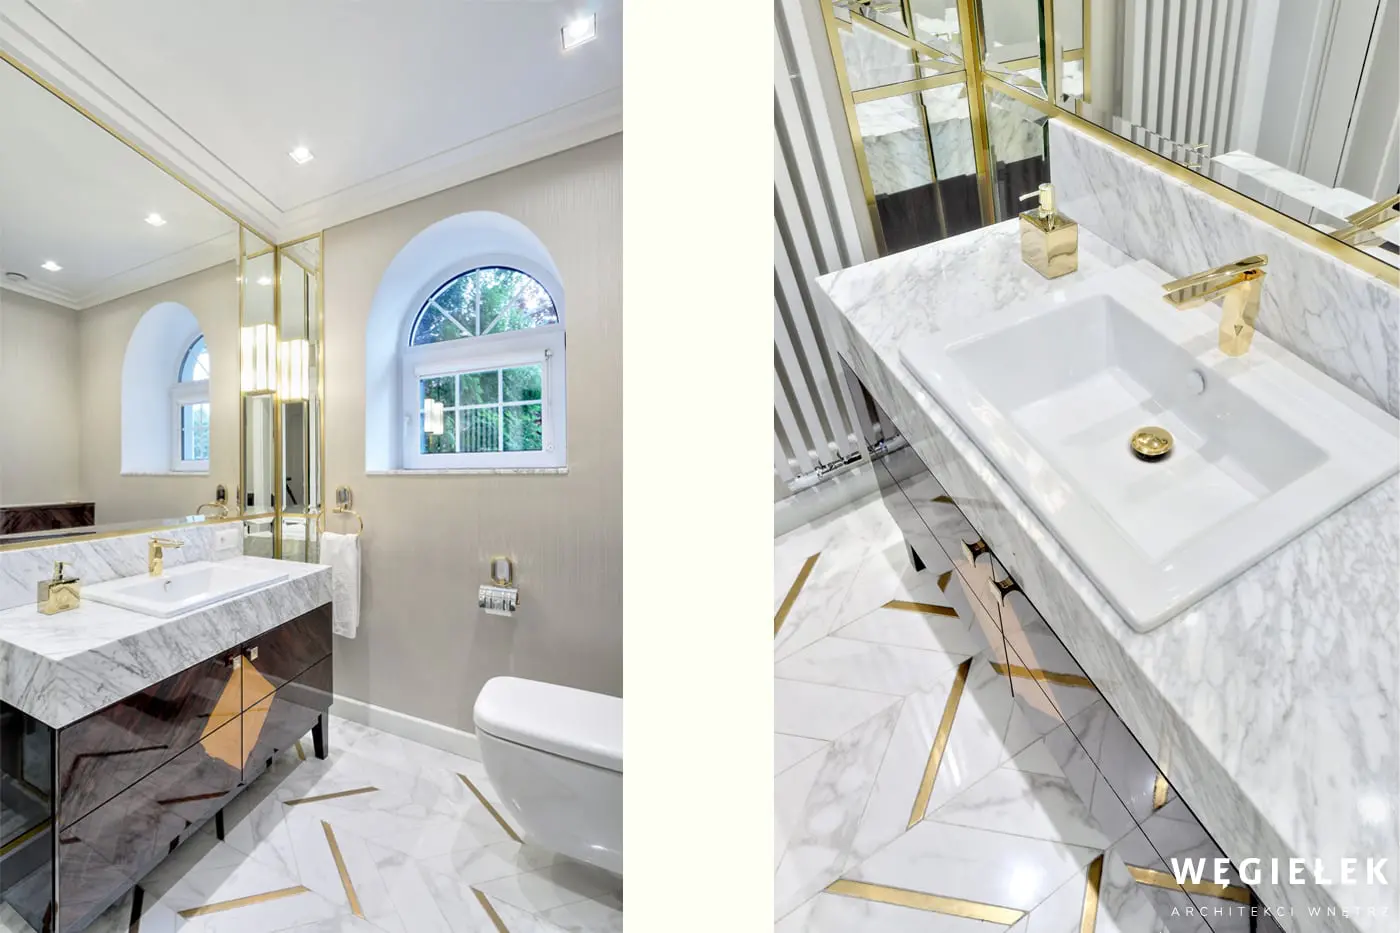 Toaleta też może być zachwycająca. Projekt architekta domów akcentuje we wnętrzu złote dodatki, które sprawiają, że jest elegancko i oryginalnie.